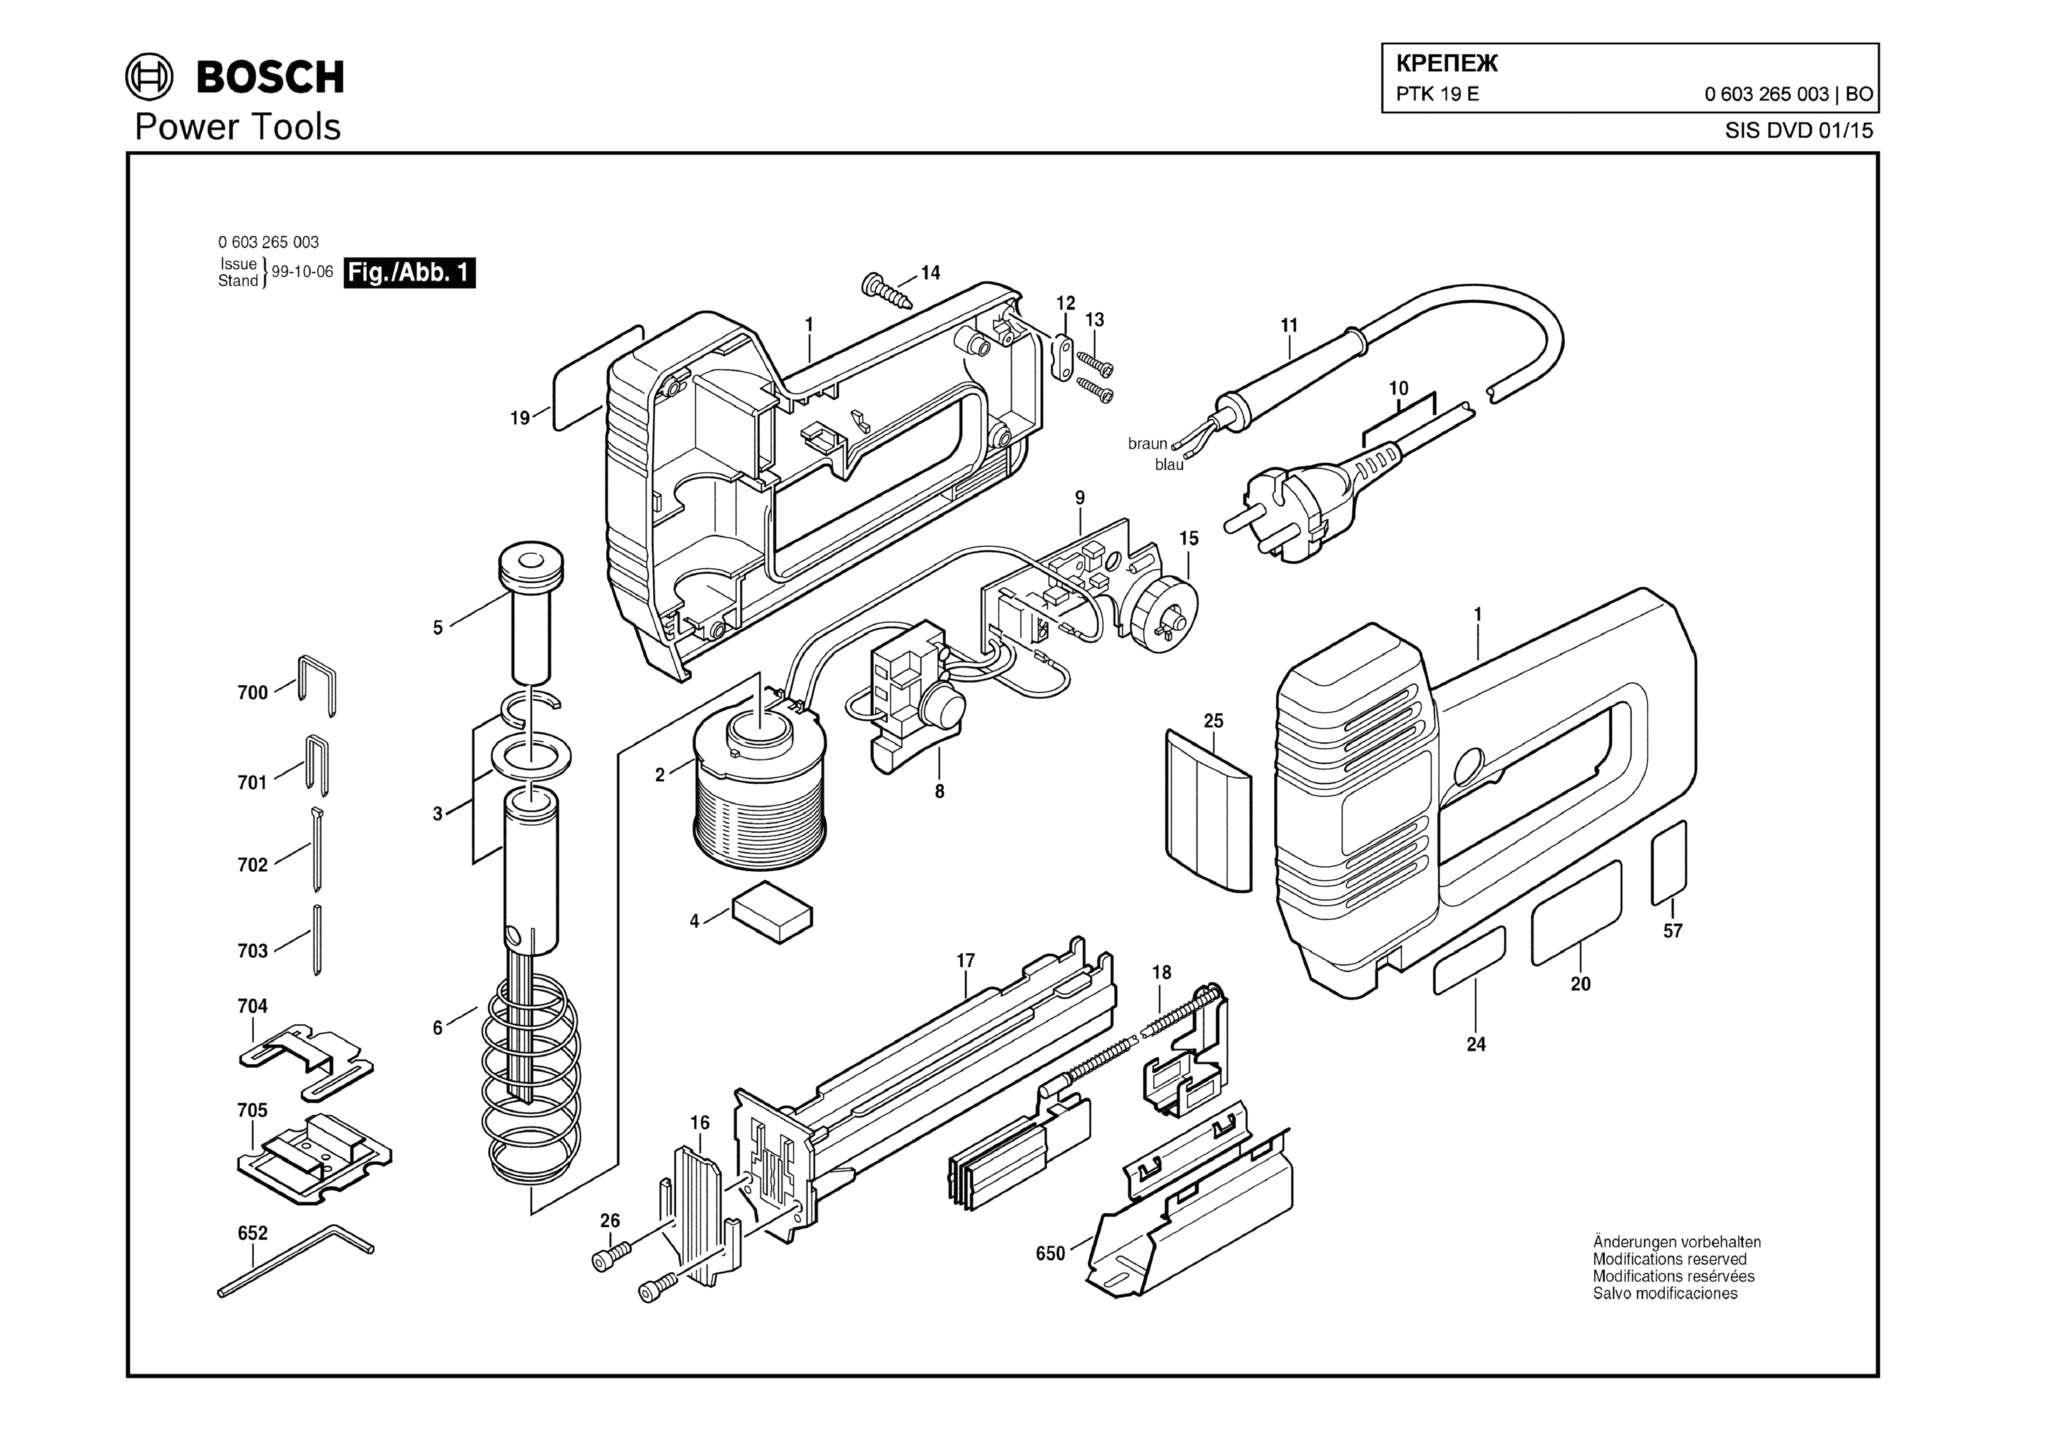 Запчасти, схема и деталировка Bosch PTK 19 E (ТИП 0603265003)